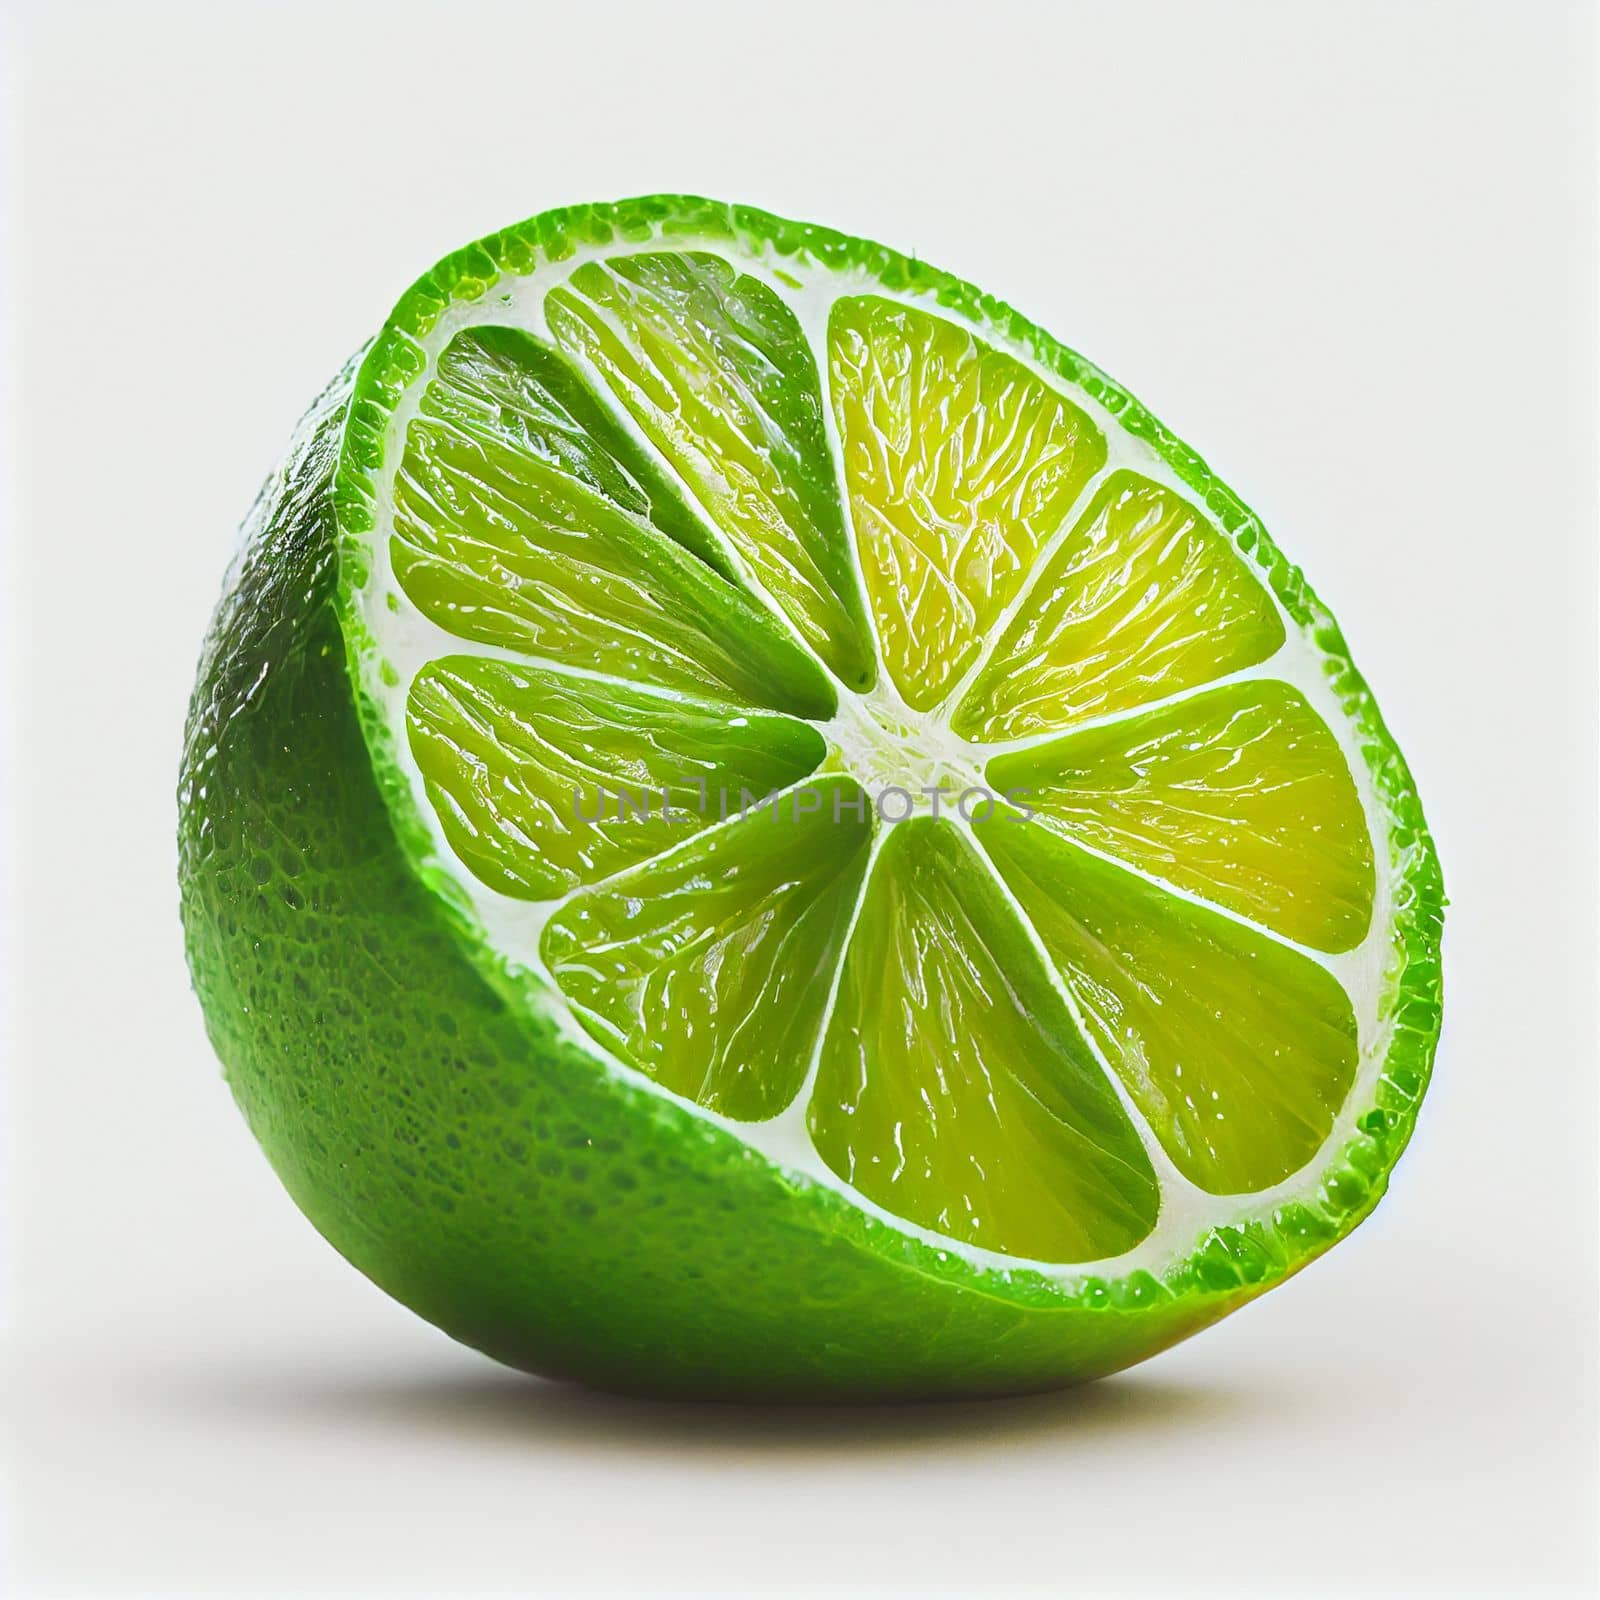 Lime fruit isolated on white background. by FokasuArt